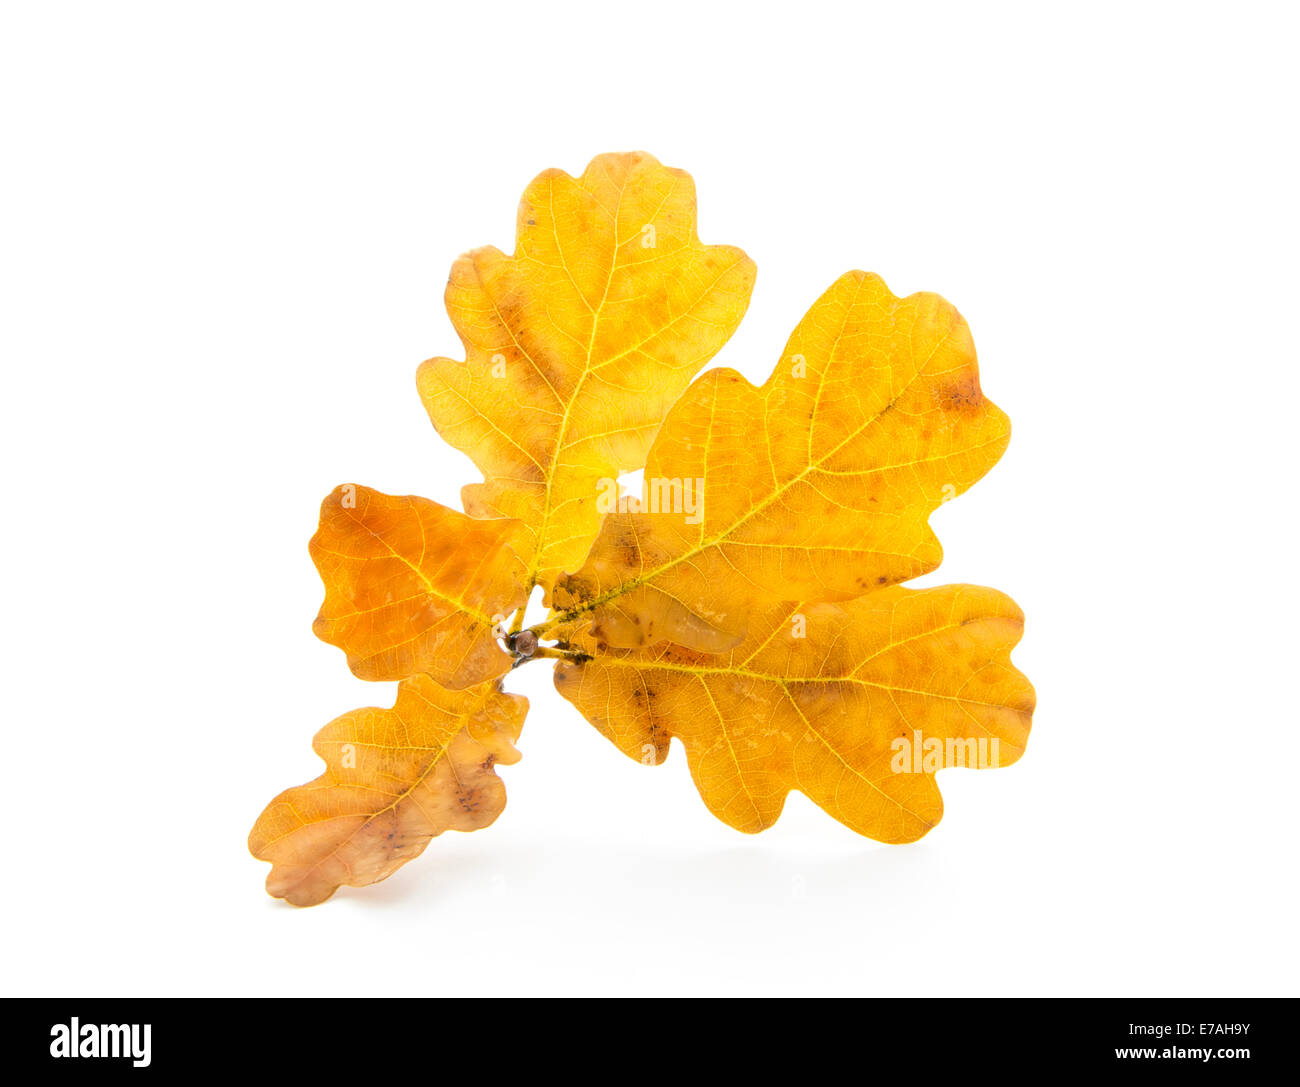 oak autumn leaves isolated on white background Stock Photo